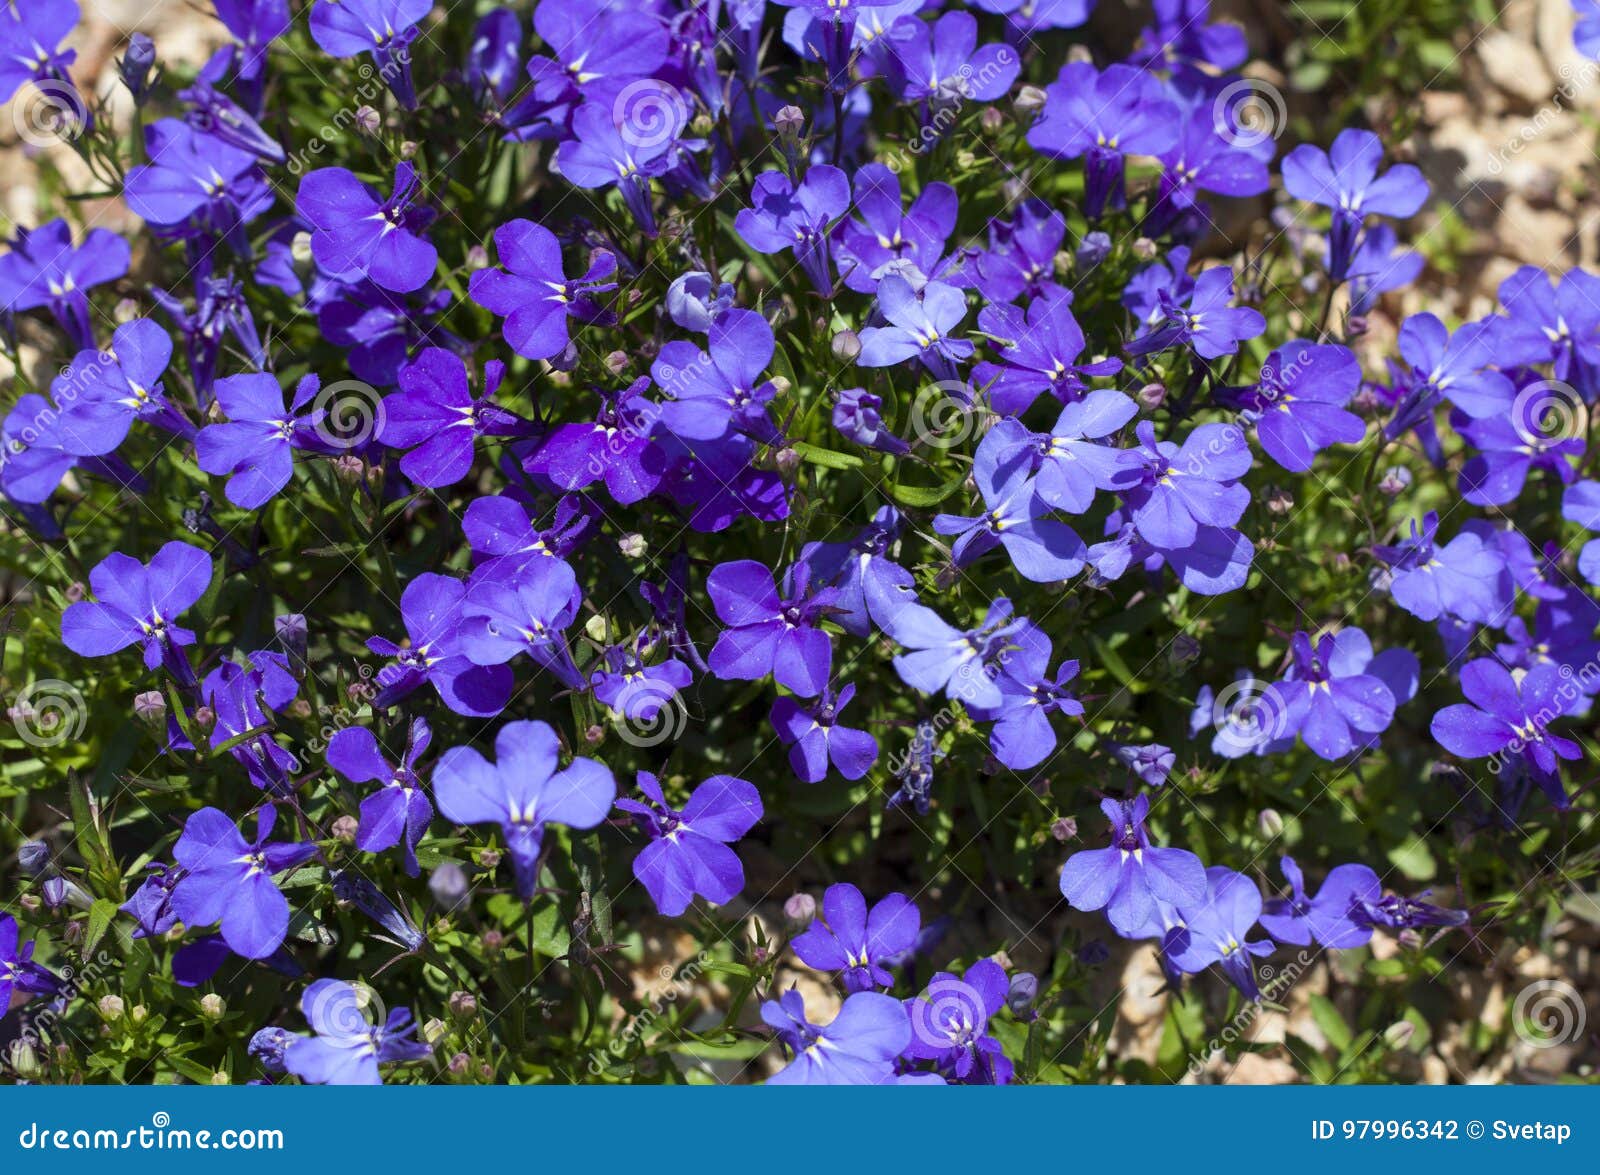 Blue Trailing Lobelia Sapphire Flowers or Edging Lobelia, Garden ...